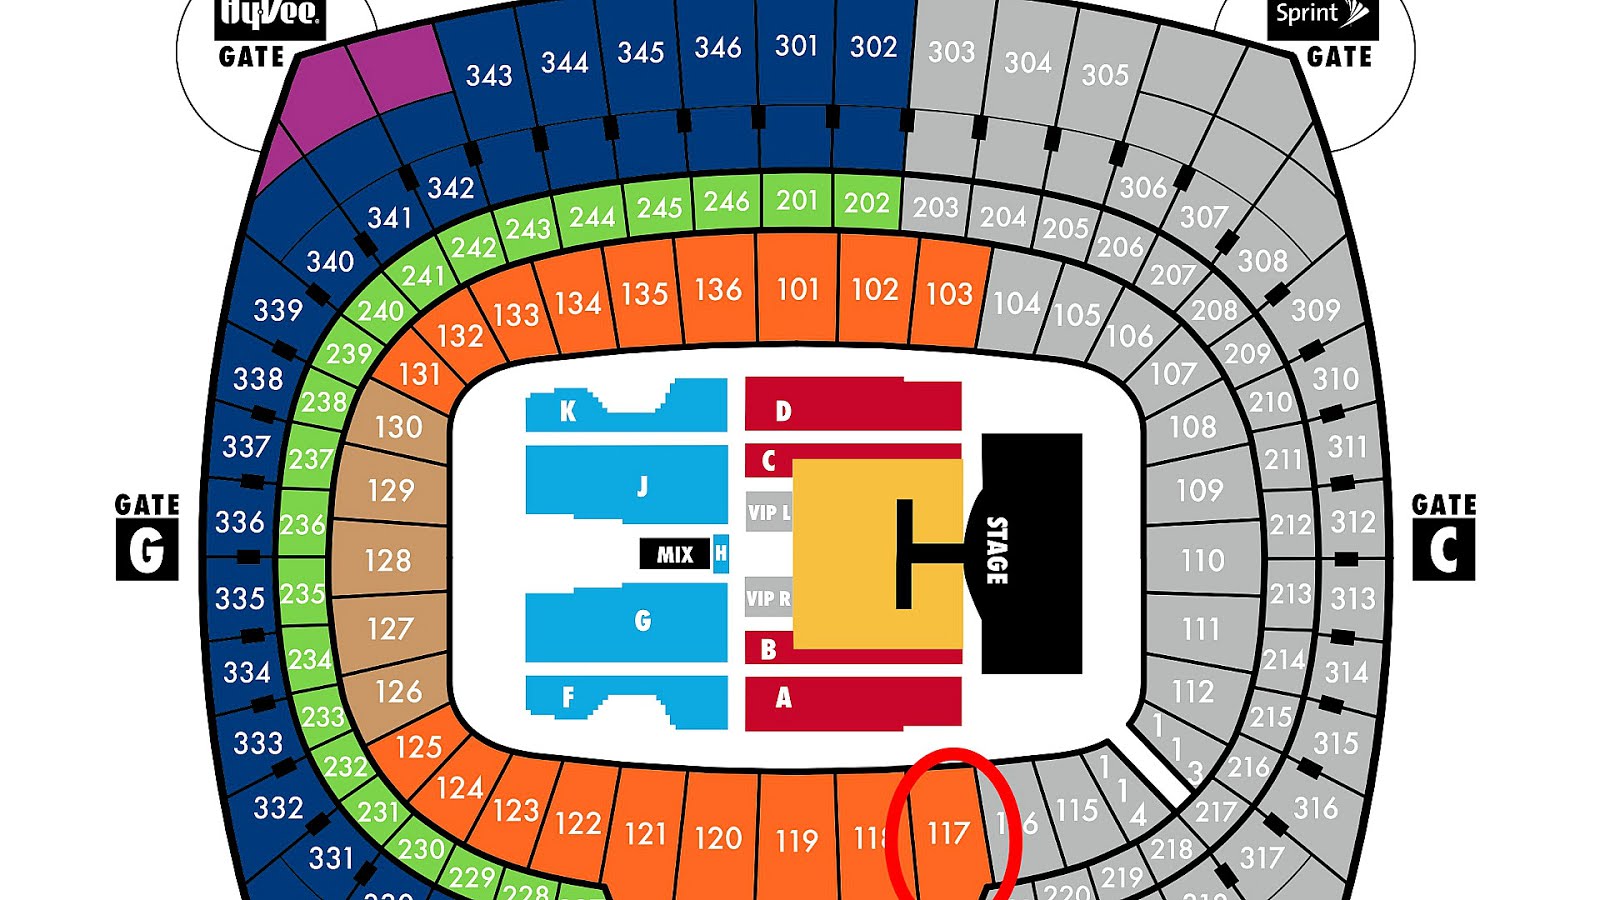 Ku Stadium Seating Chart